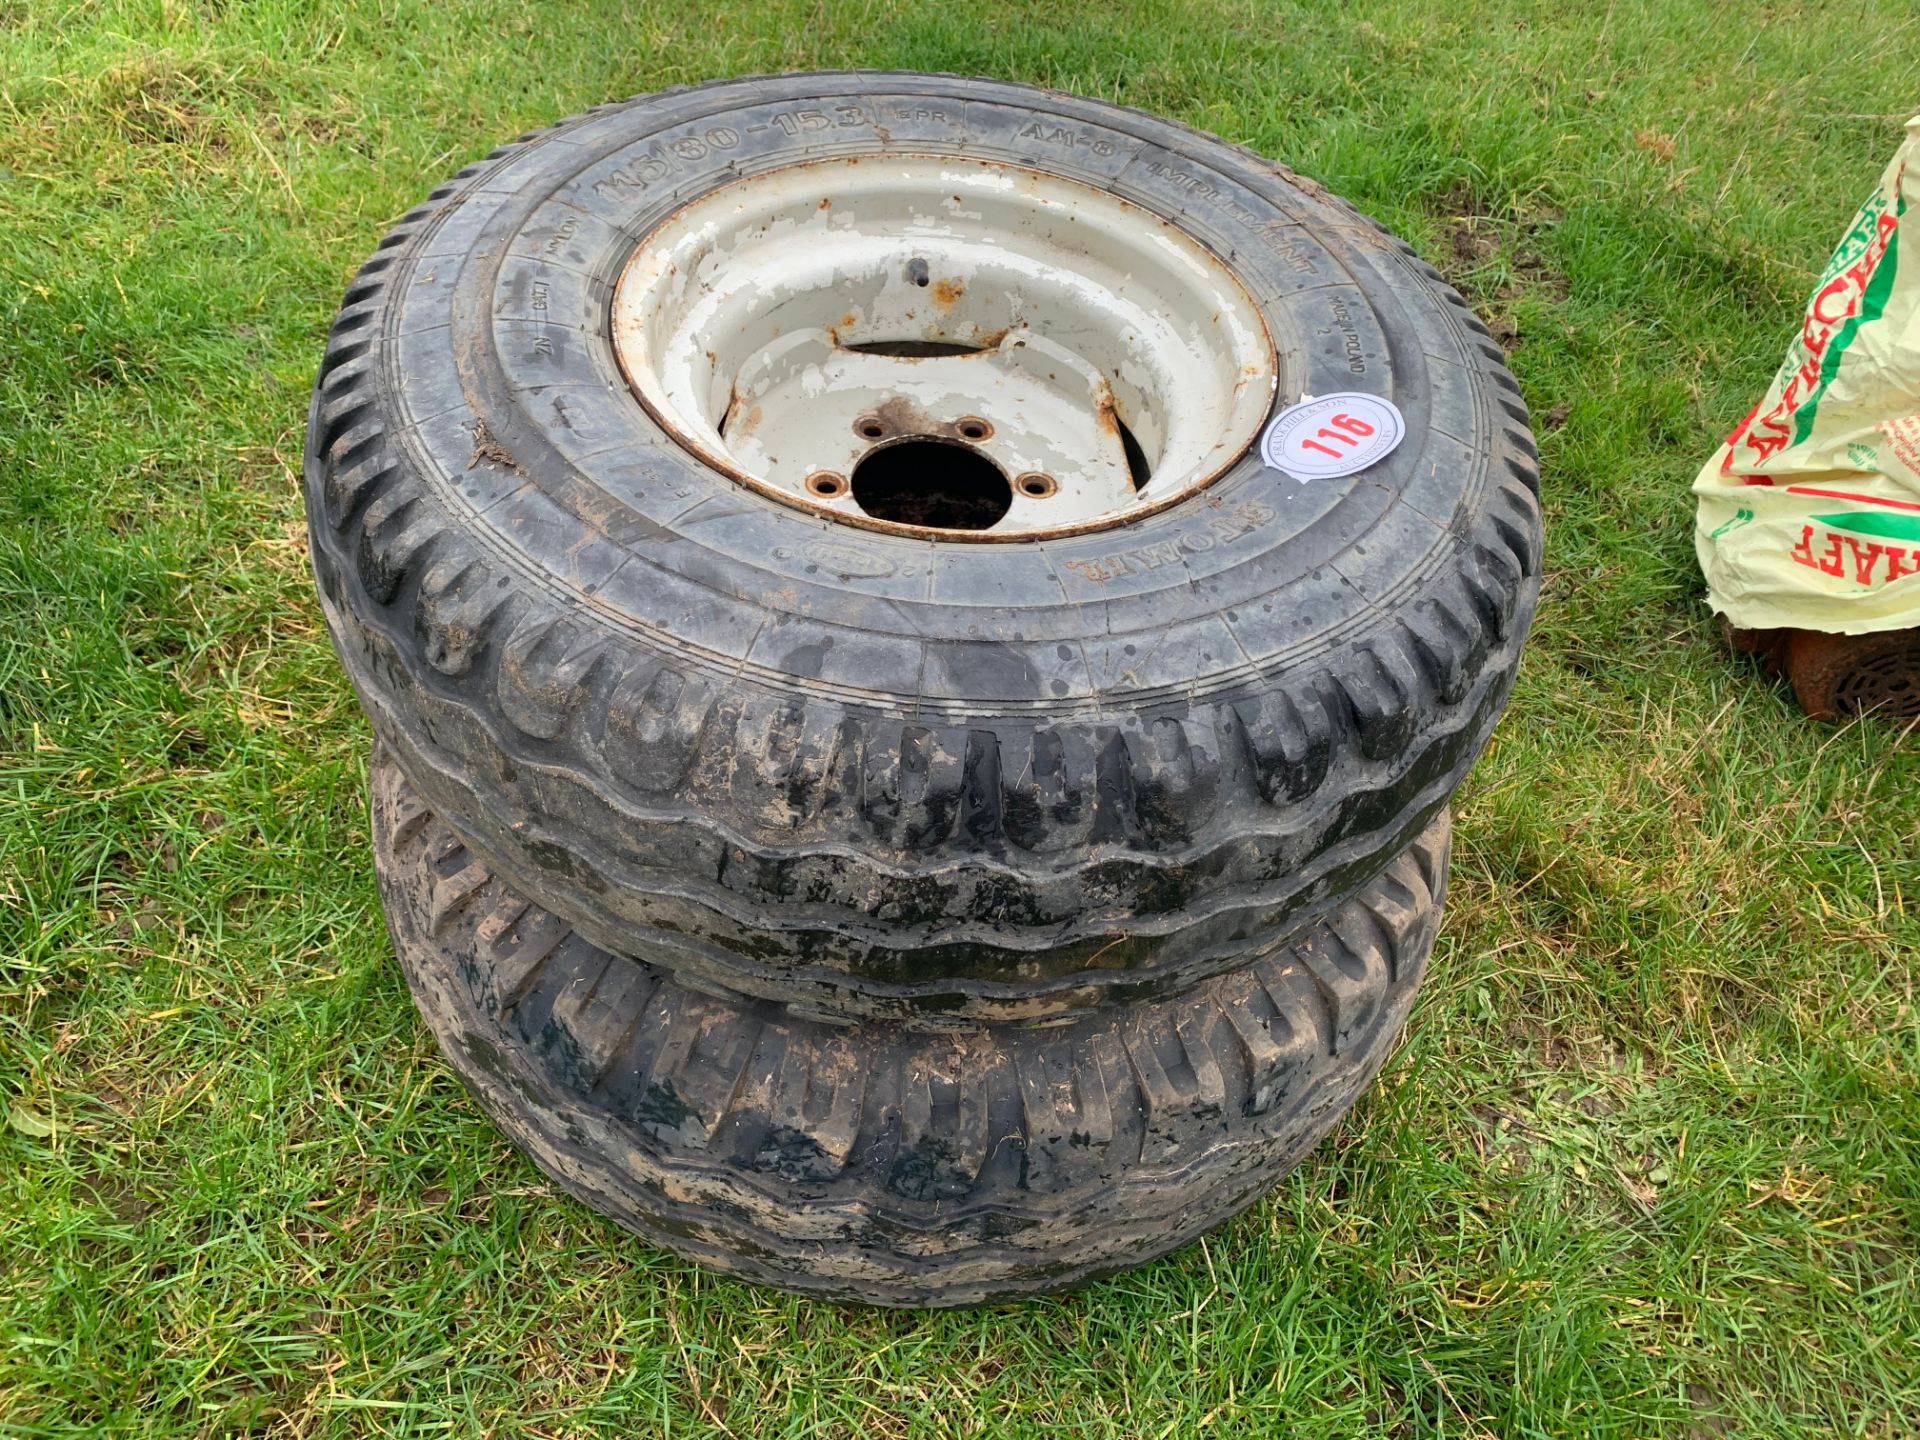 Pair of 6 stud wheels & tyres 11.5/80-15.3